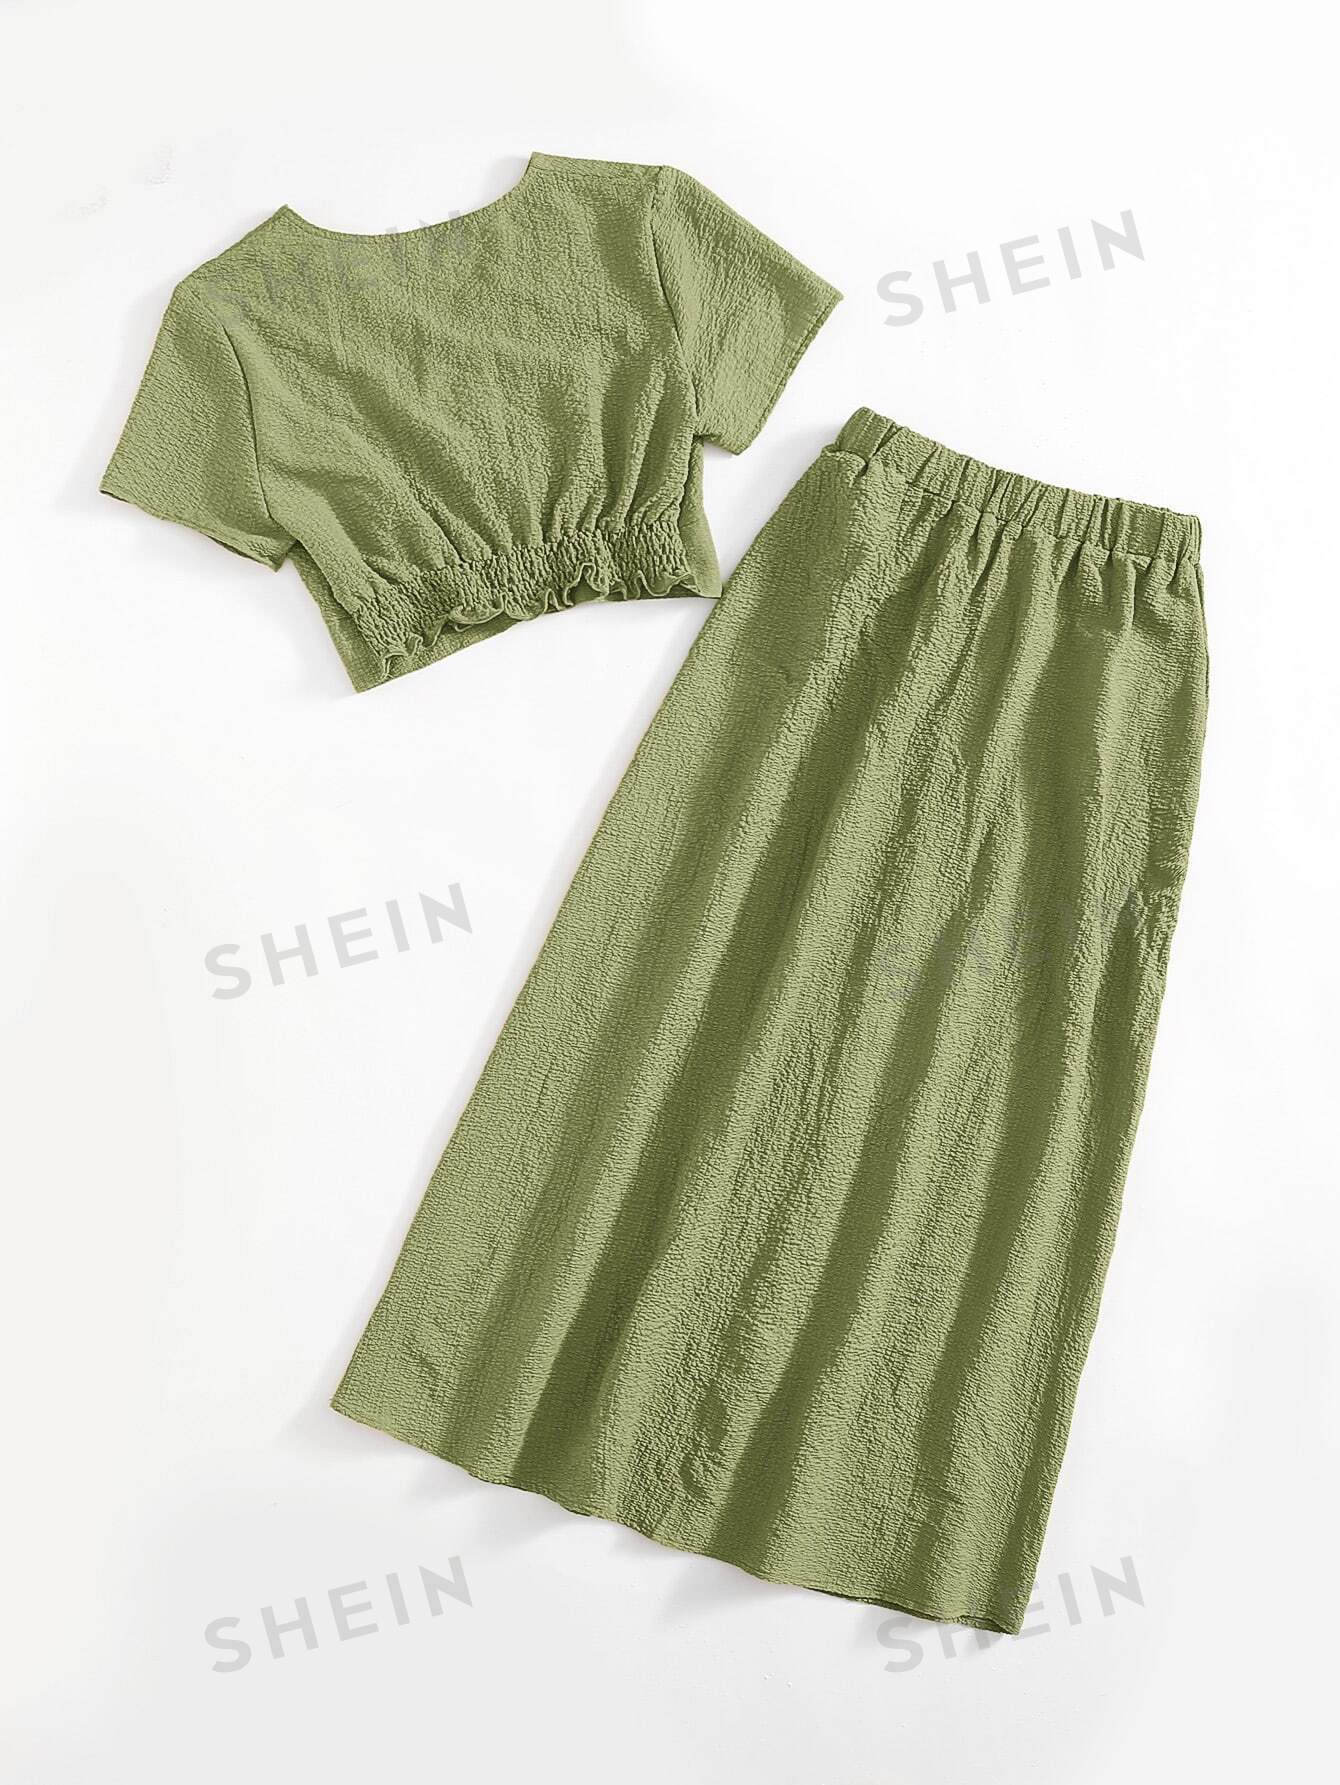 SHEIN Mulvari однотонный текстурированный повседневный комплект из двух предметов, оливково-зеленый